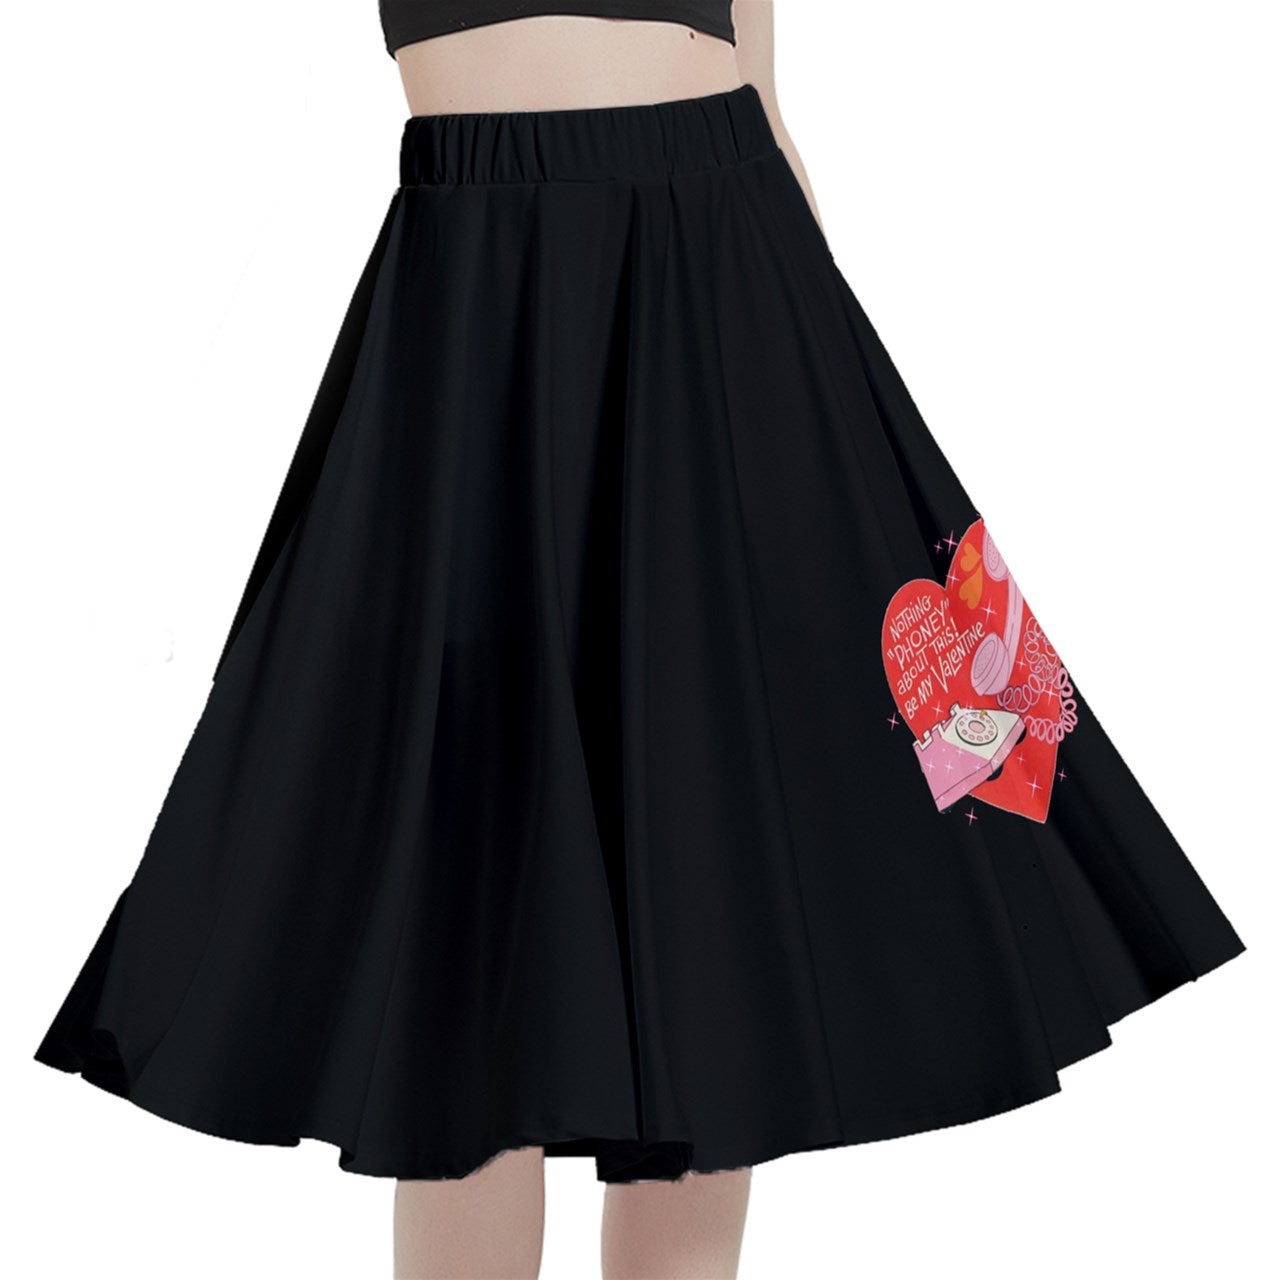 Heart Shaped Box Midi Skirt With Pocket